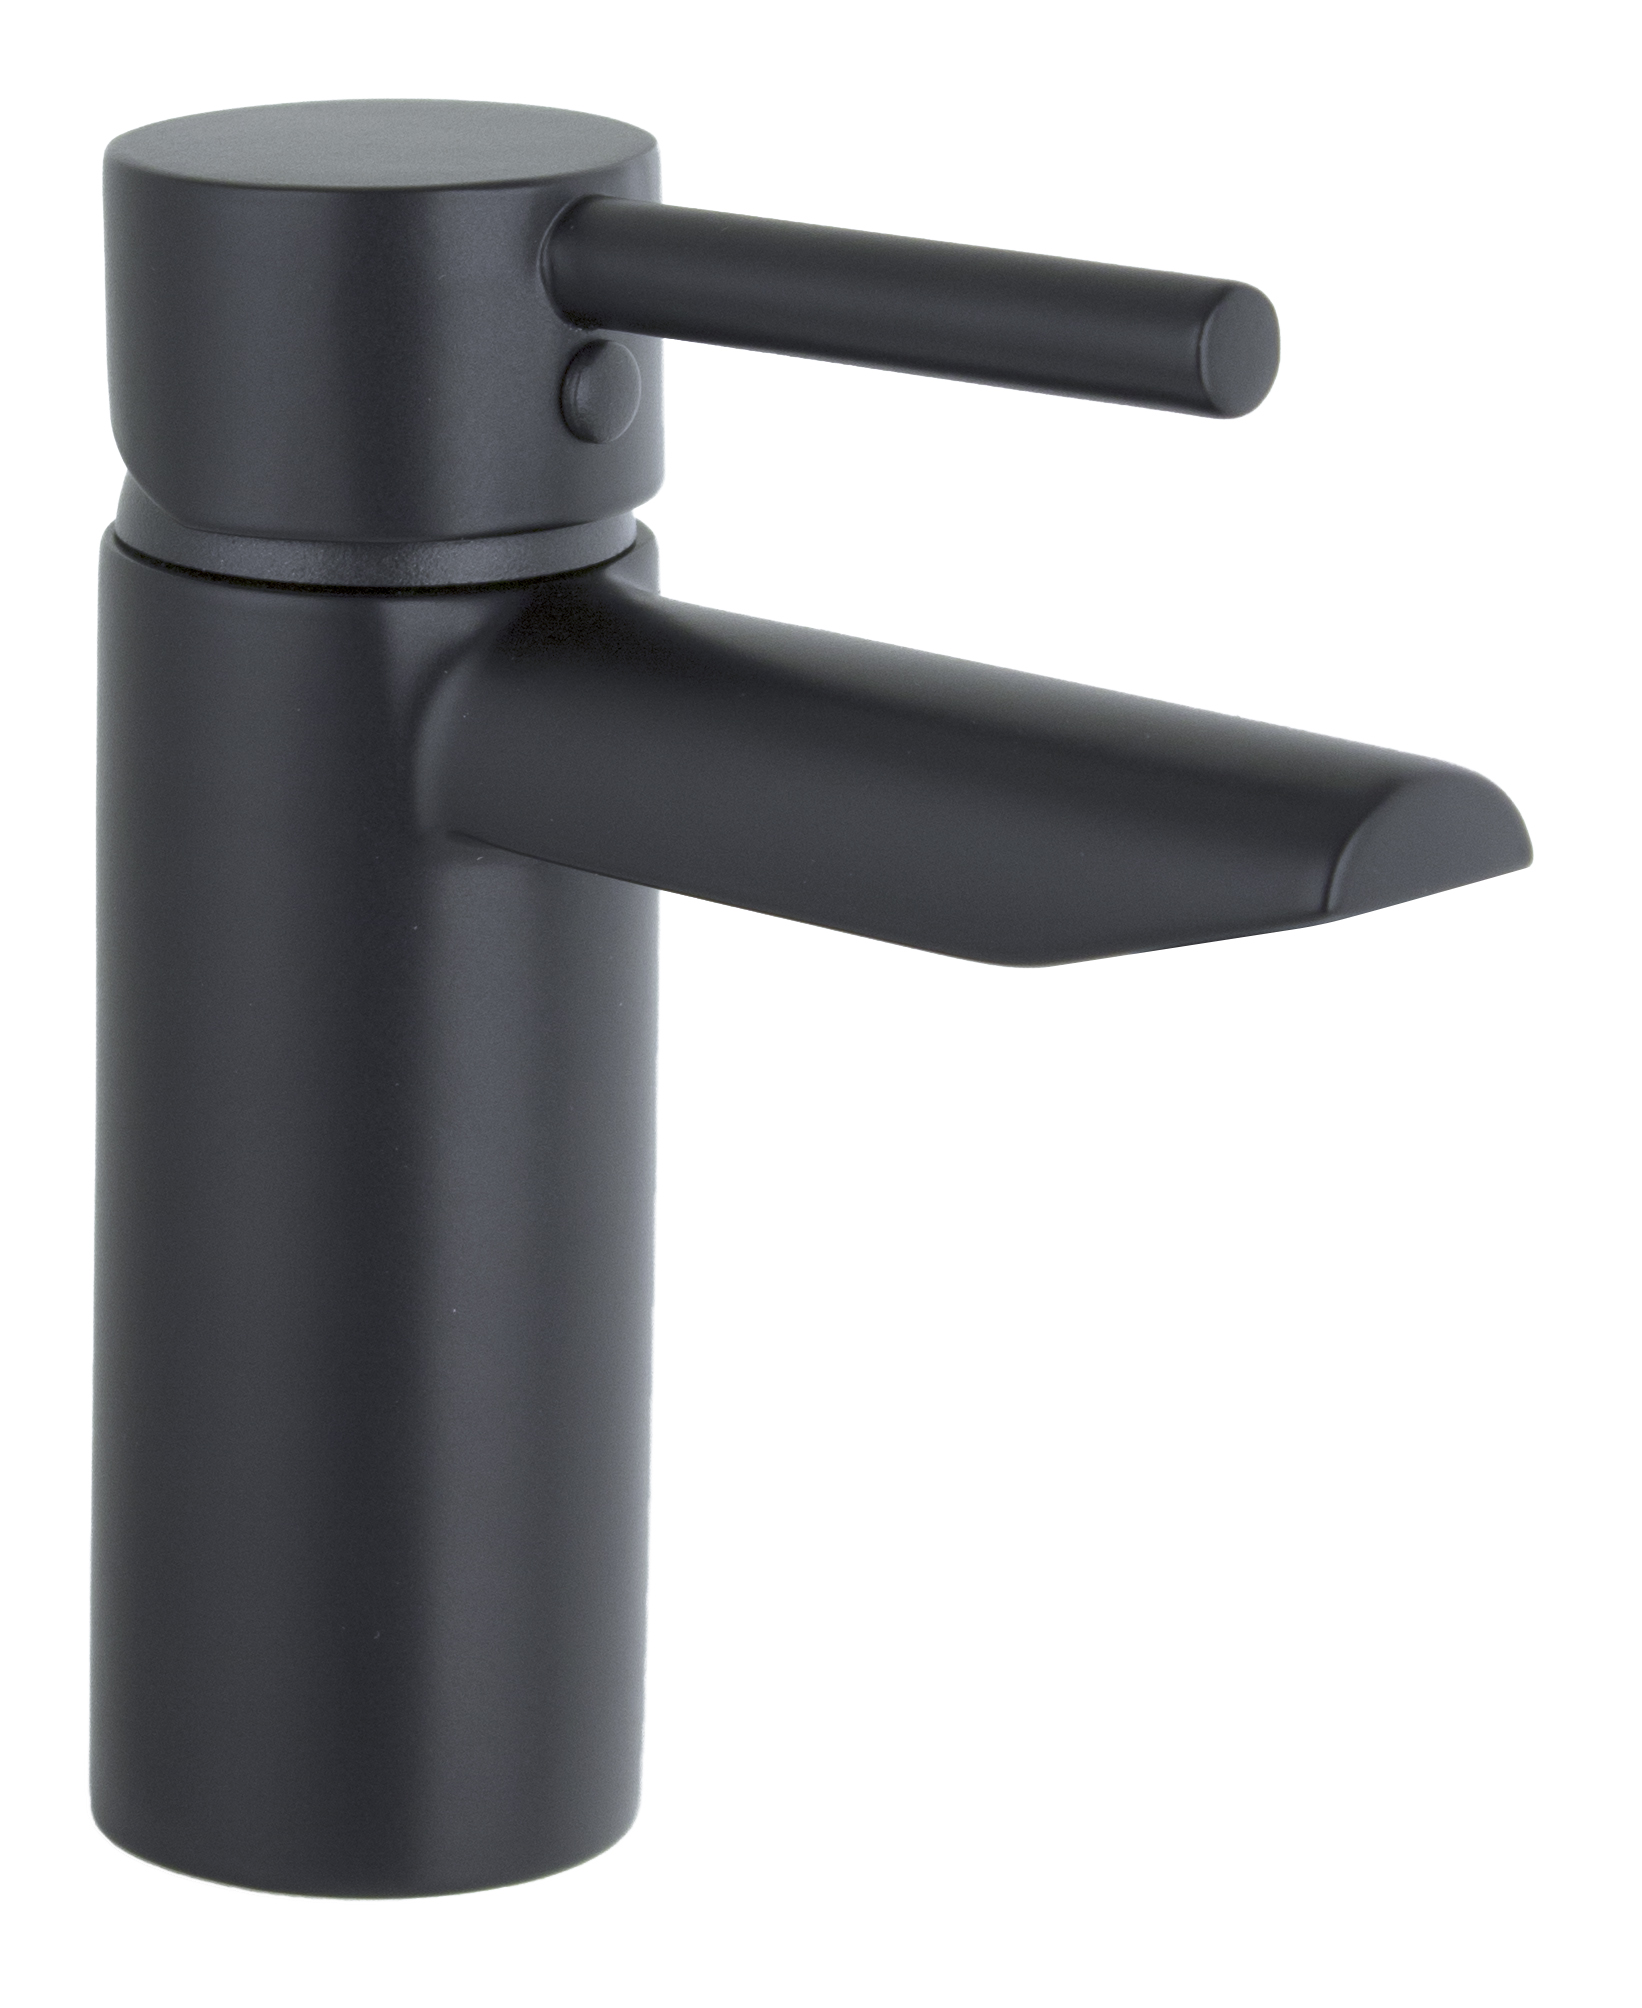 Single Lever Faucet | Porcemall